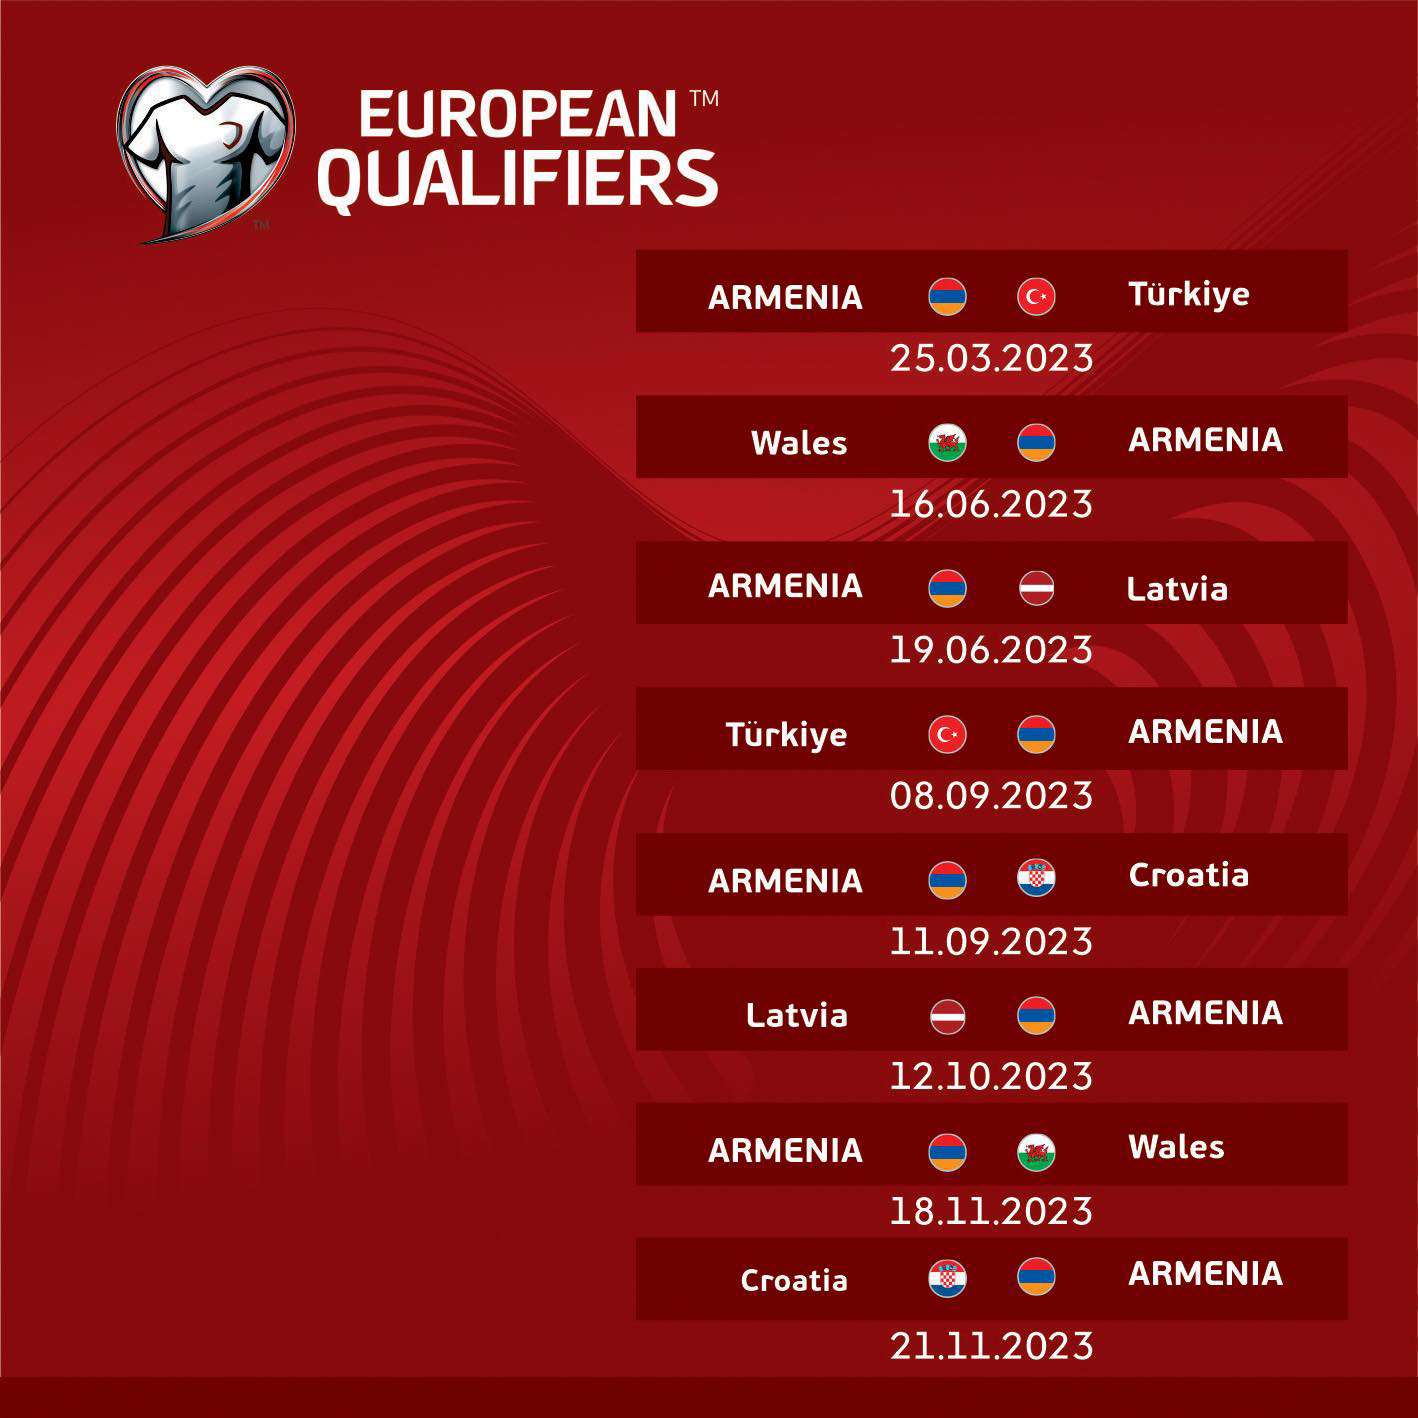 Отборочные матчи евро 2024 по футболу расписание